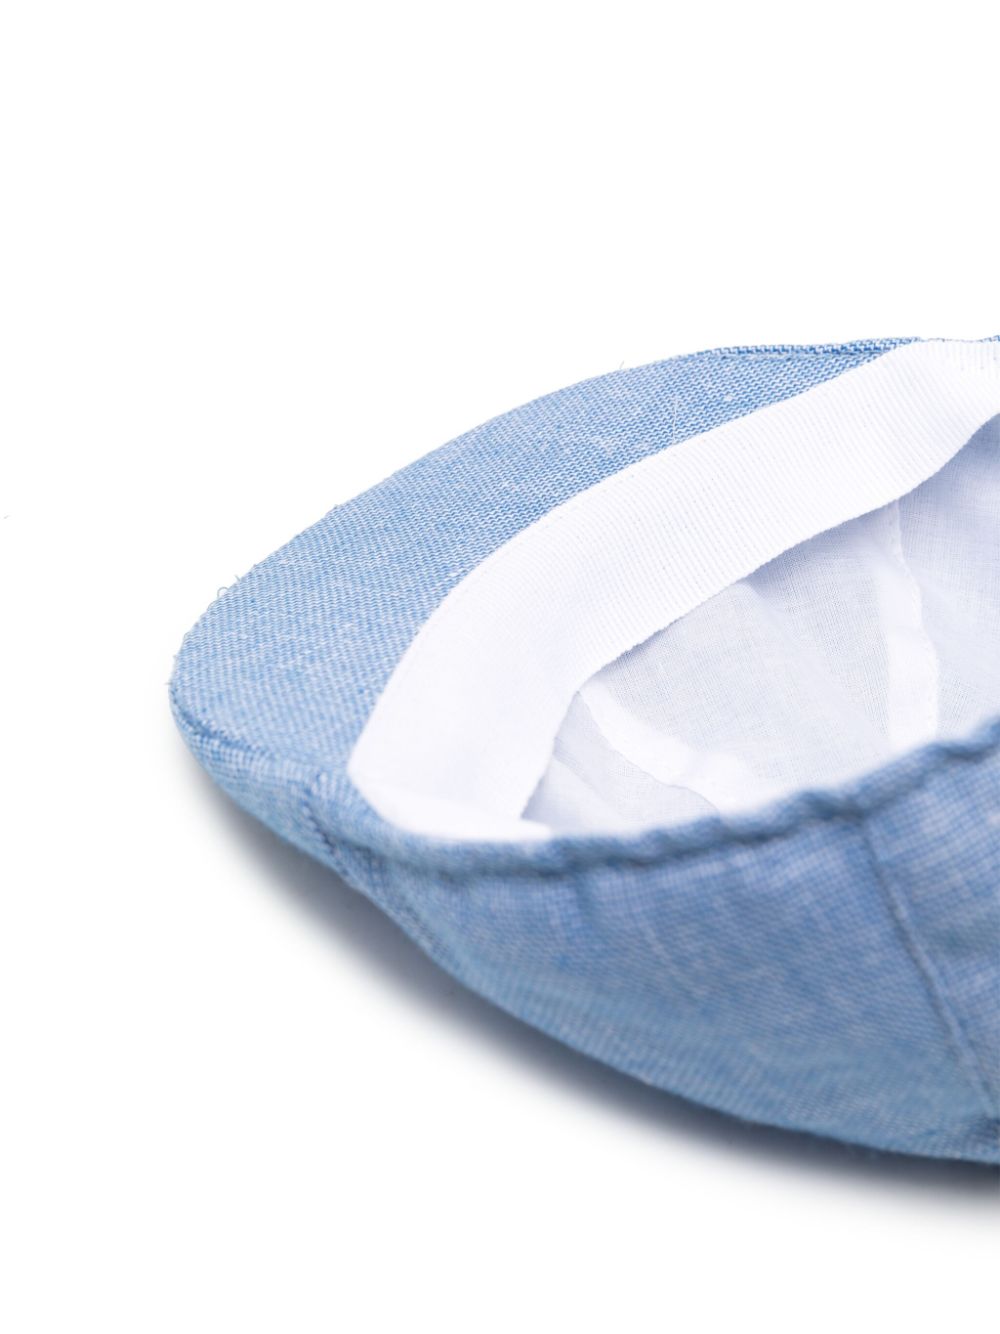 Cappello neonata blu/bianco